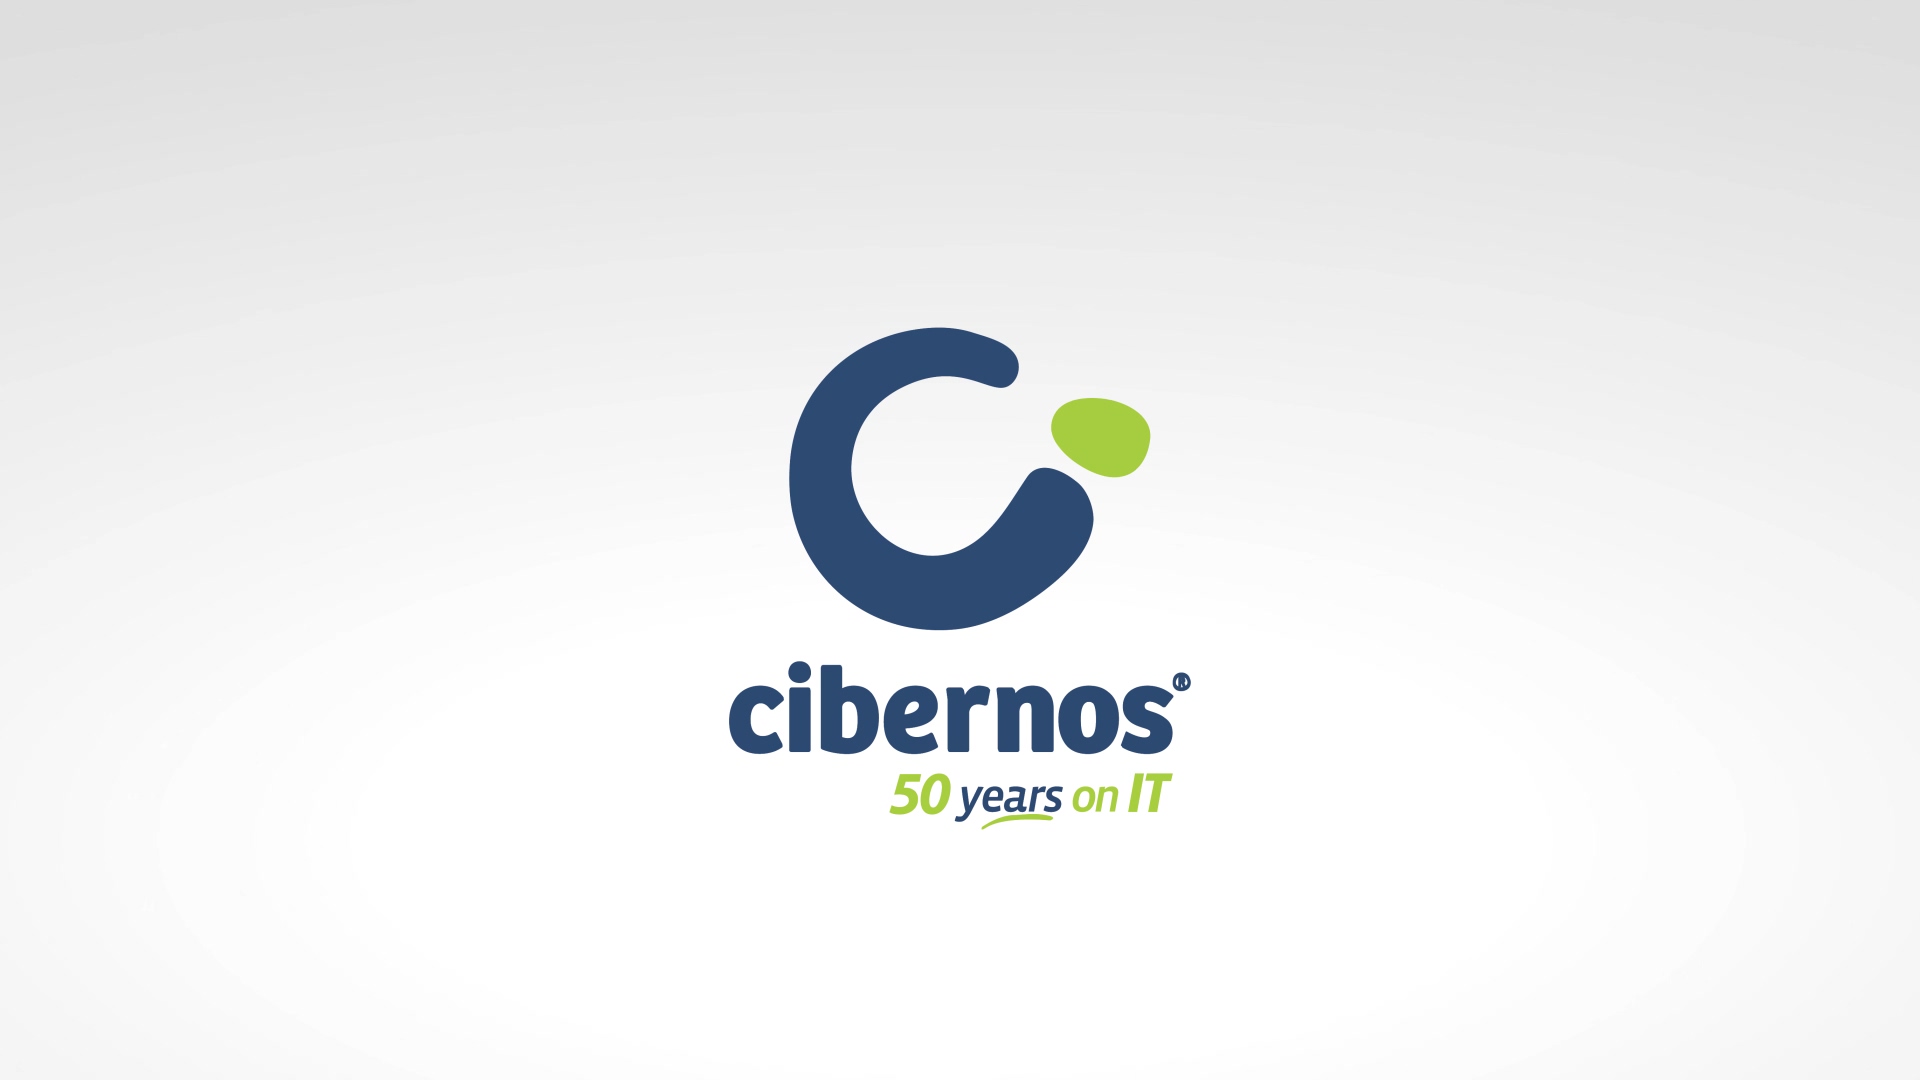 VIDEO3_cibernos_v2